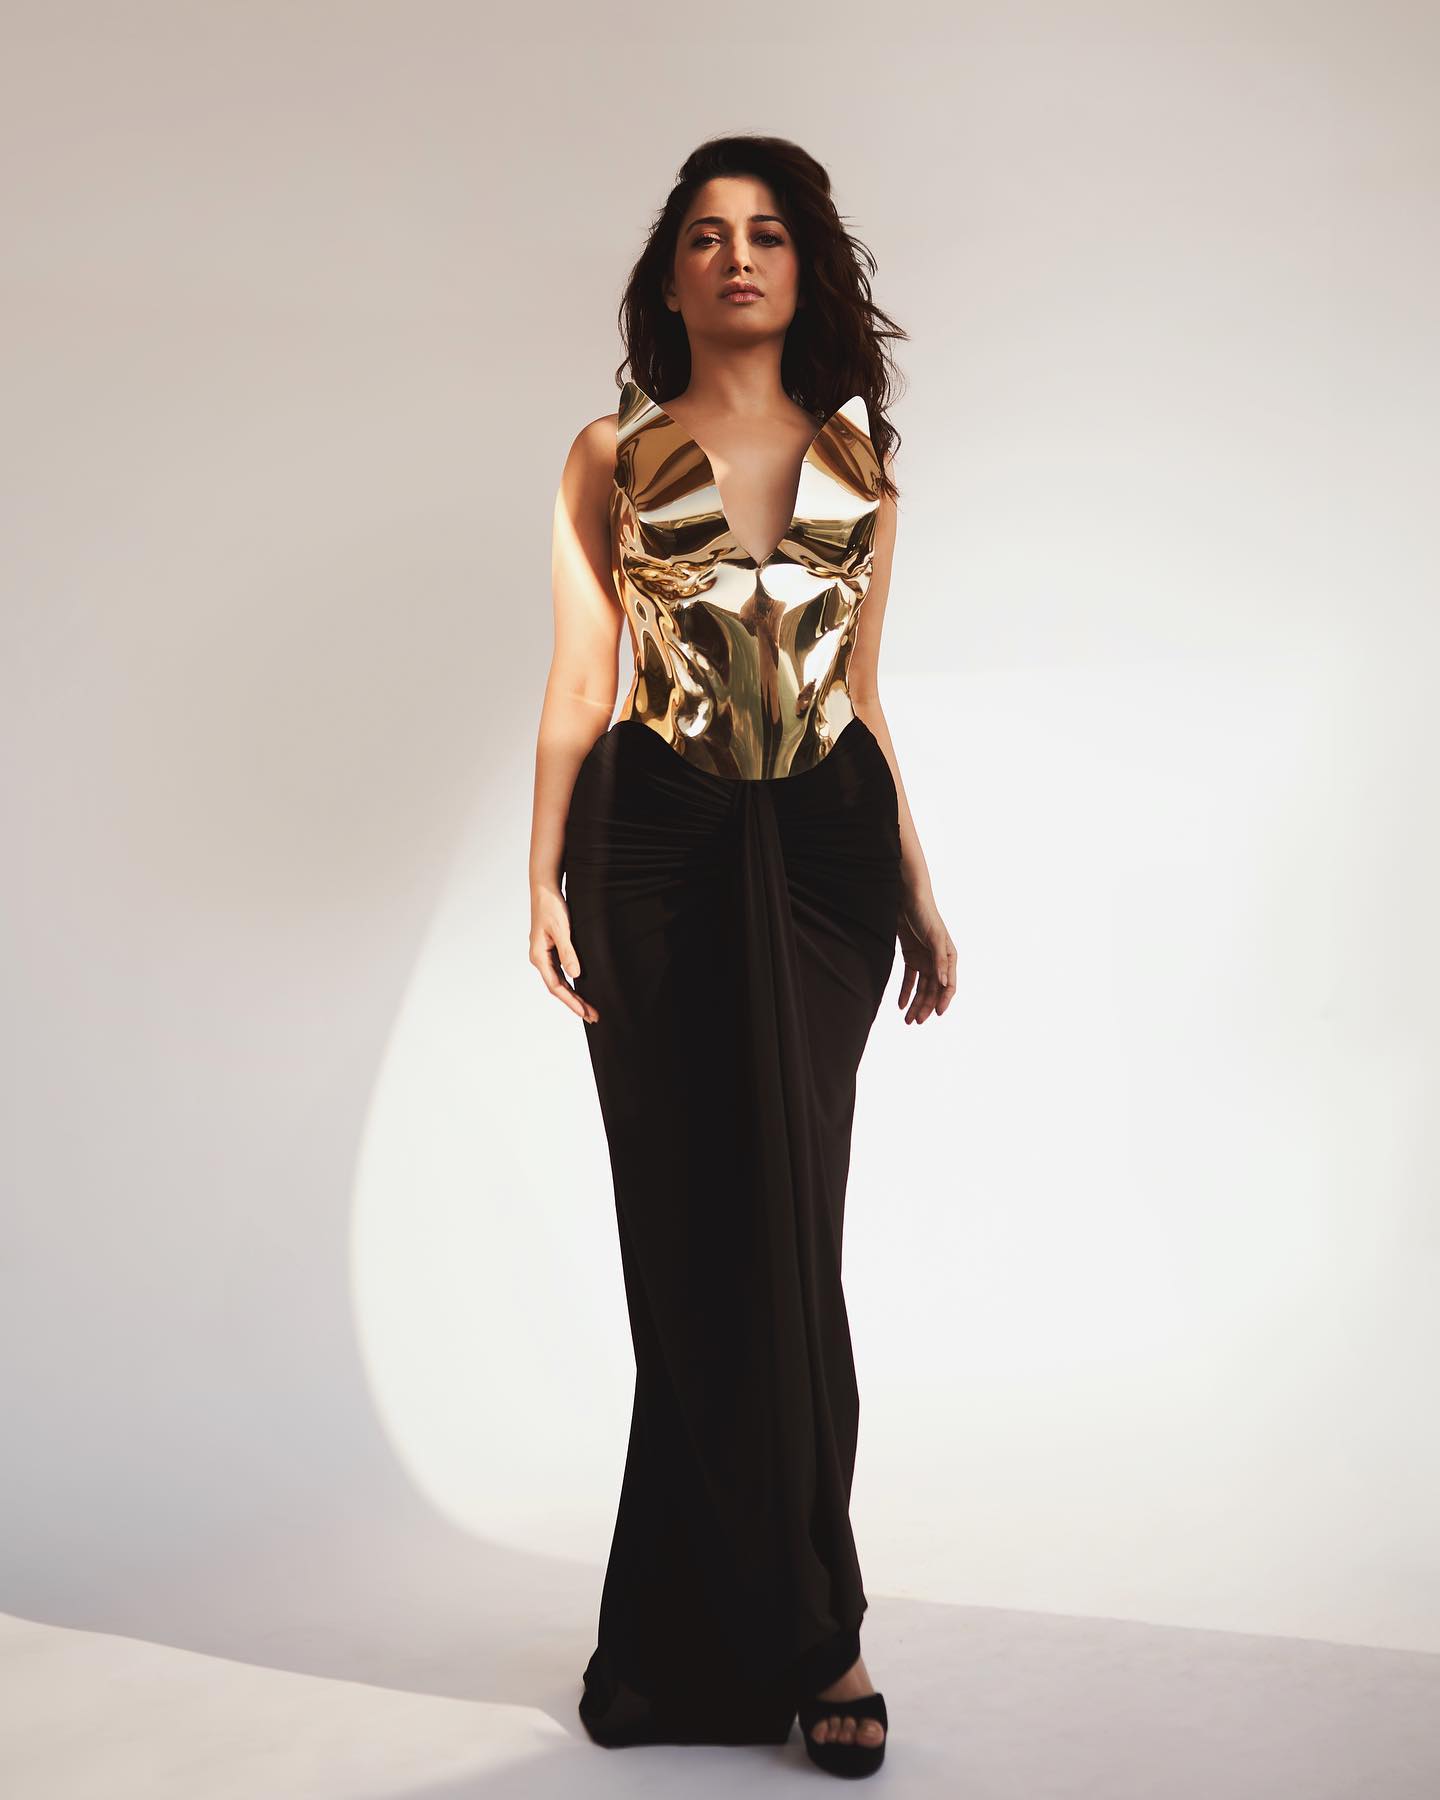 Tamannaah Bhatia in Vogue: Golden & Black Chic 3